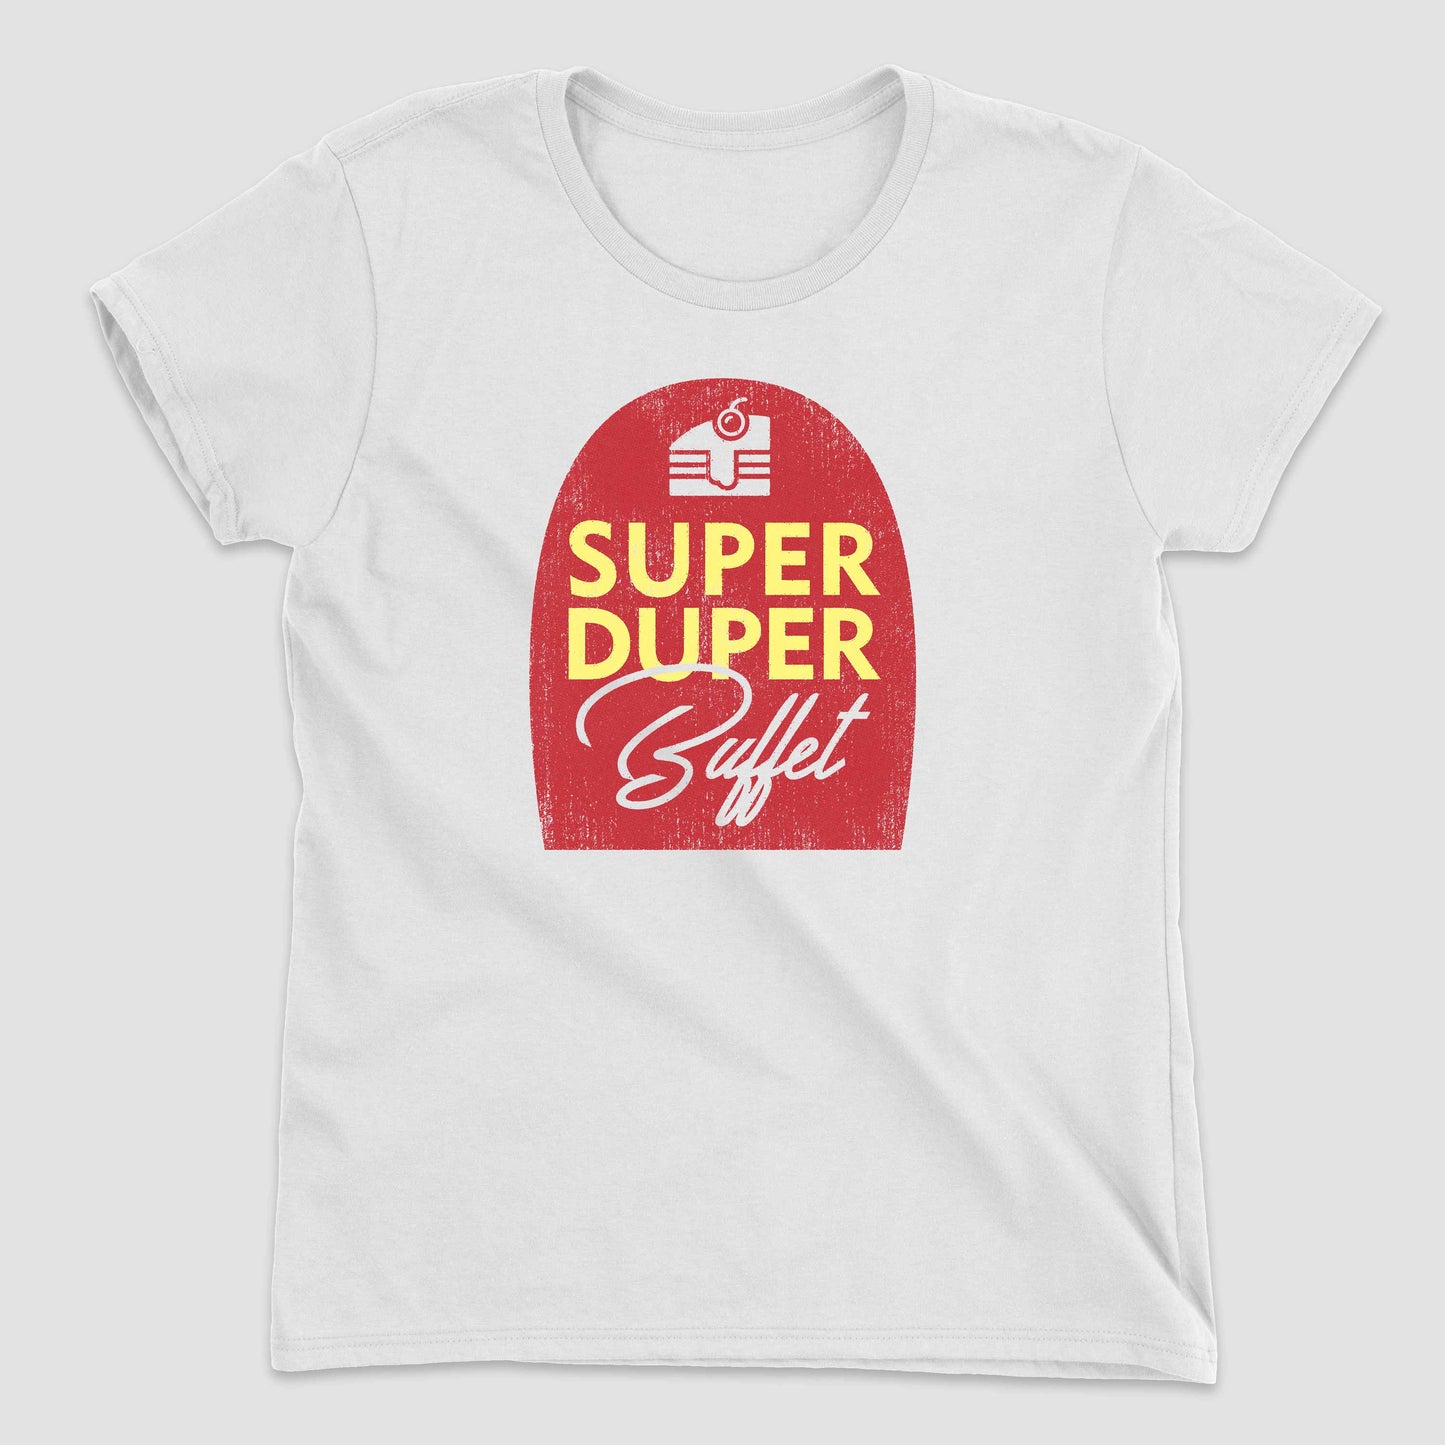 White Super Duper Buffet Women's T-Shirt by Snaxtime